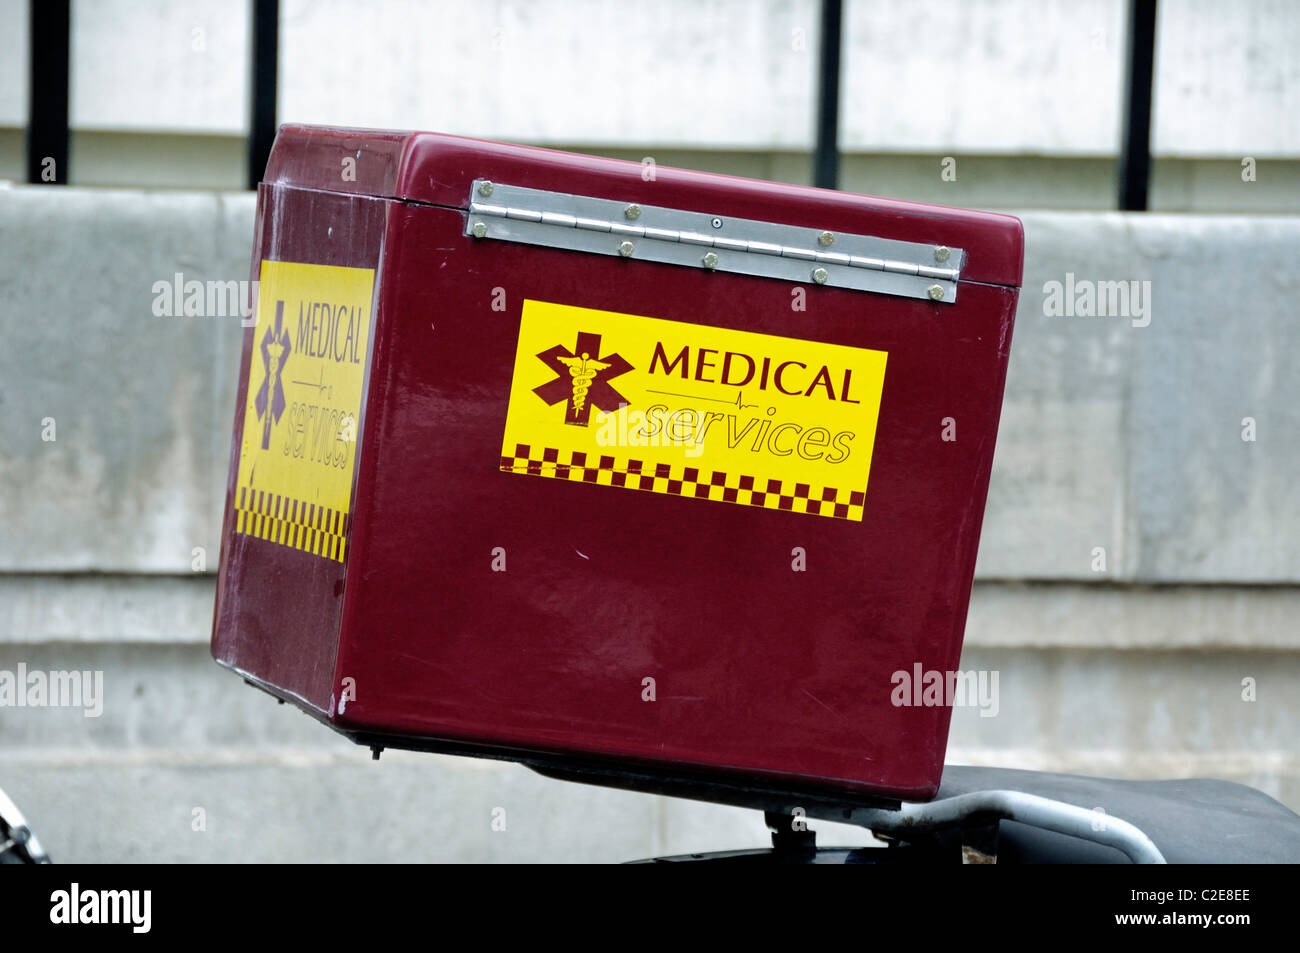 Services médicaux - boîte contenant des fournitures médicales à l'arrière du centre de Londres Angleterre Royaume-uni moto Banque D'Images